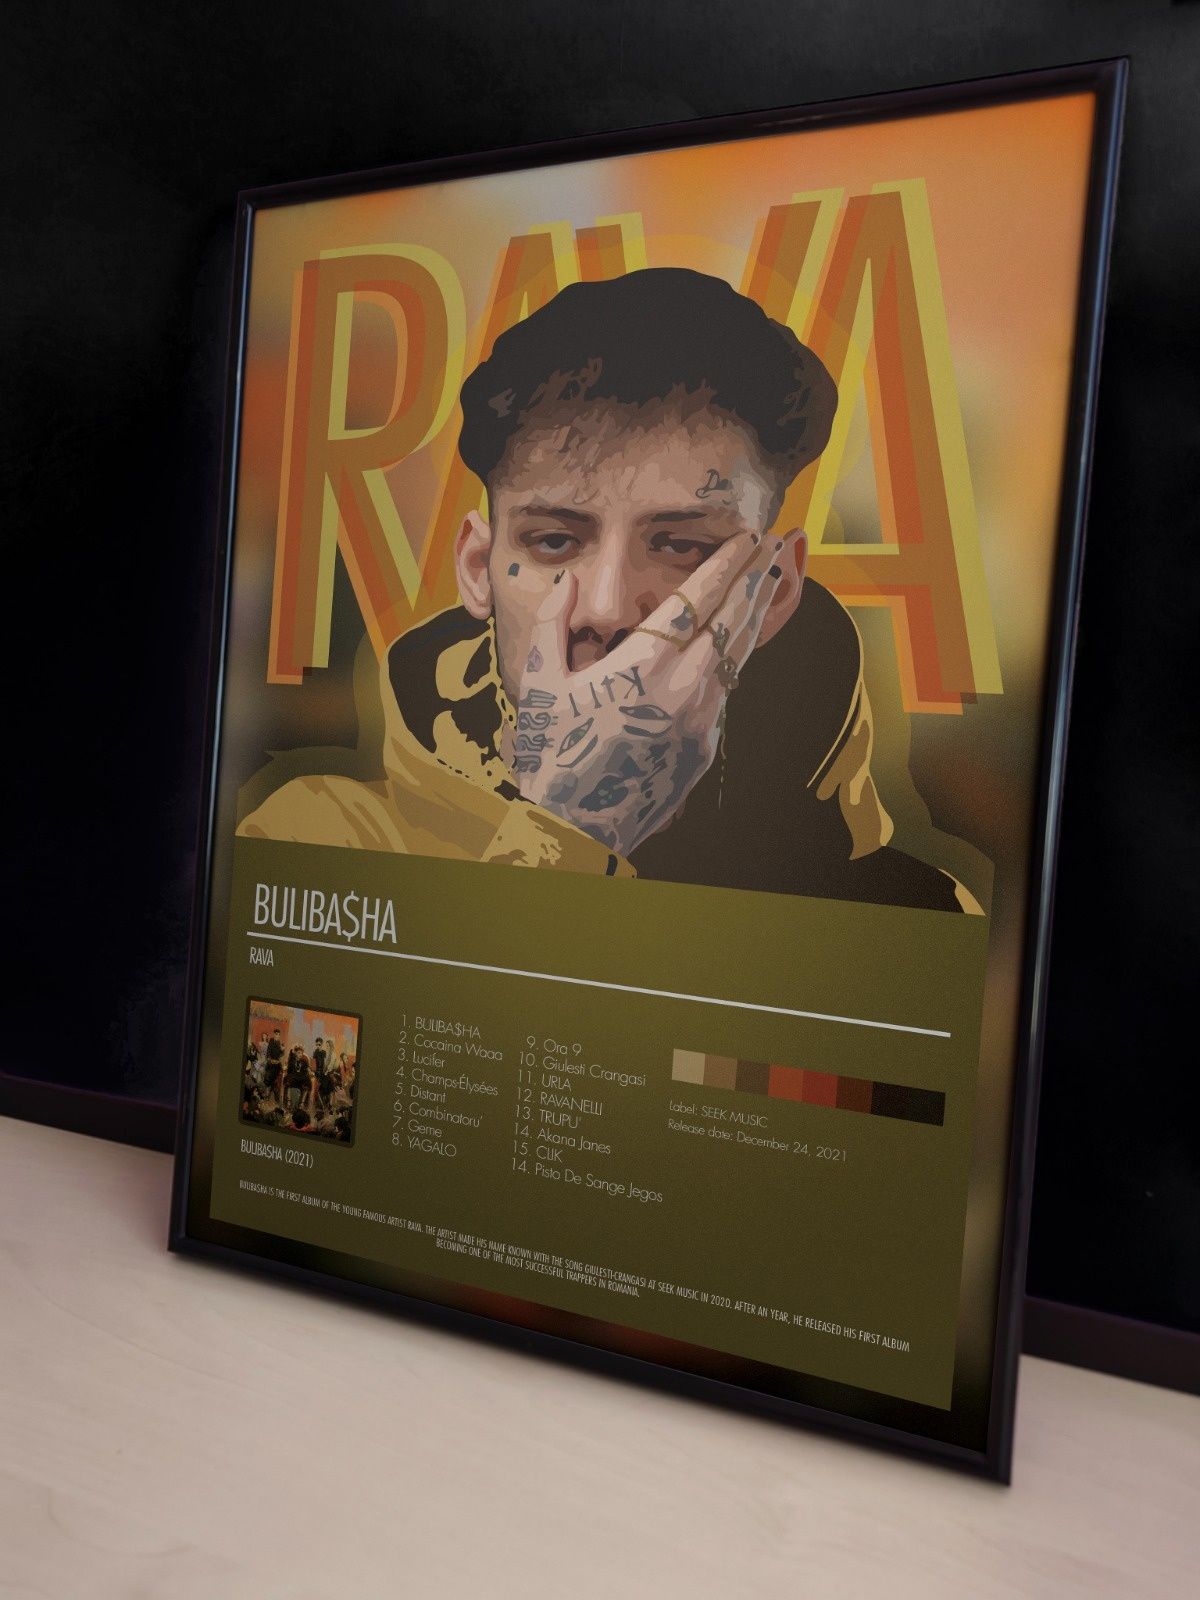 Poster RAVA, cadou pentru fani trap. 4226. Album Buliba$ha.